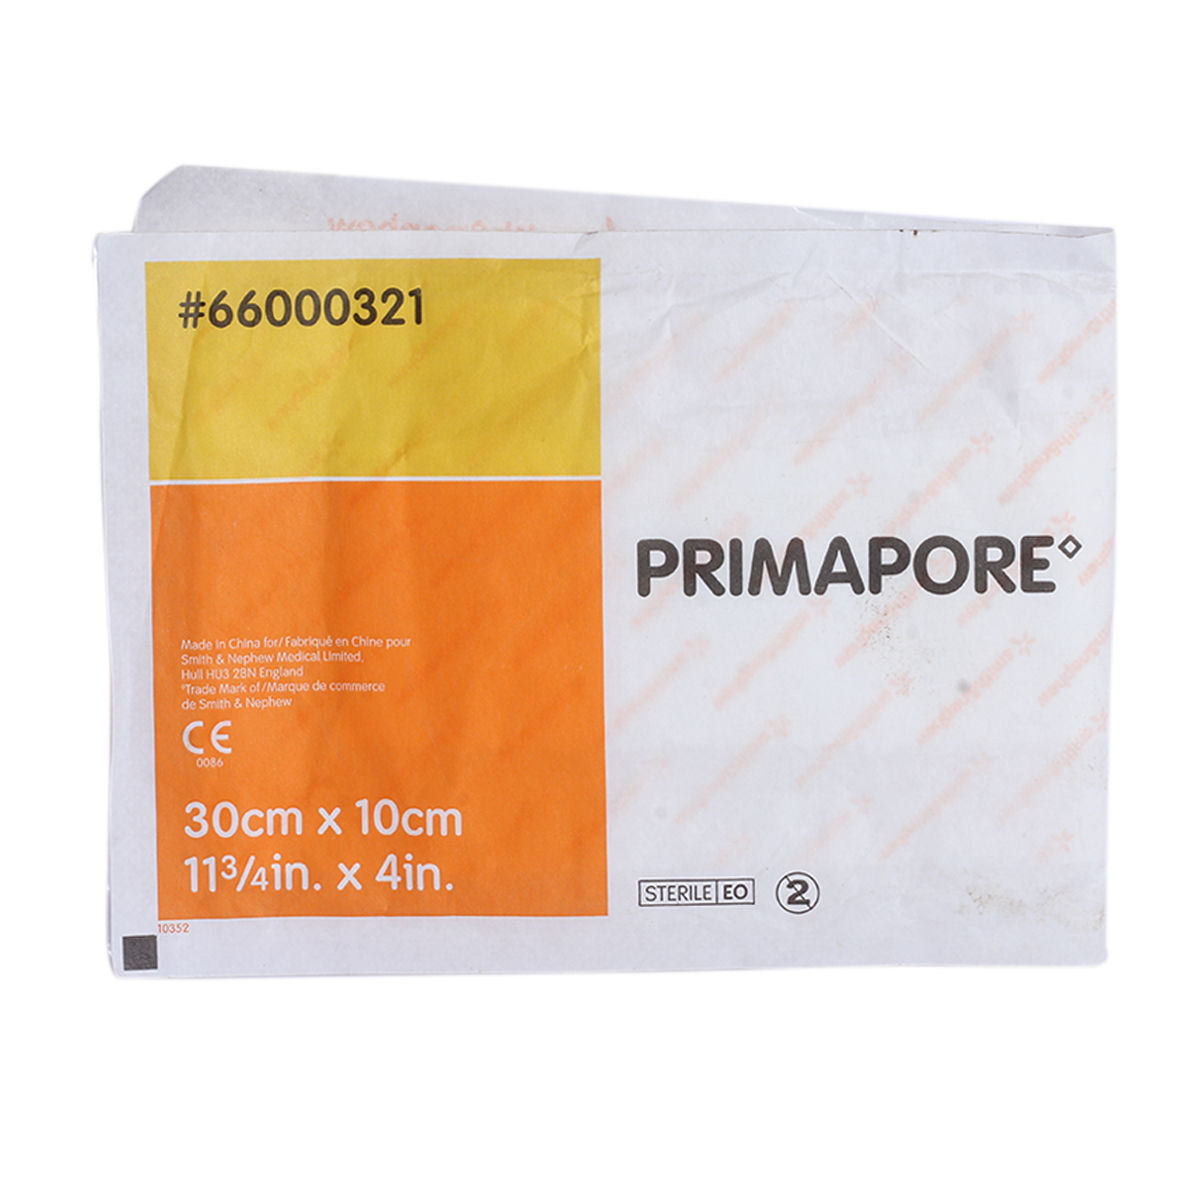 Buy Primapore 30 X 10 Cm Online